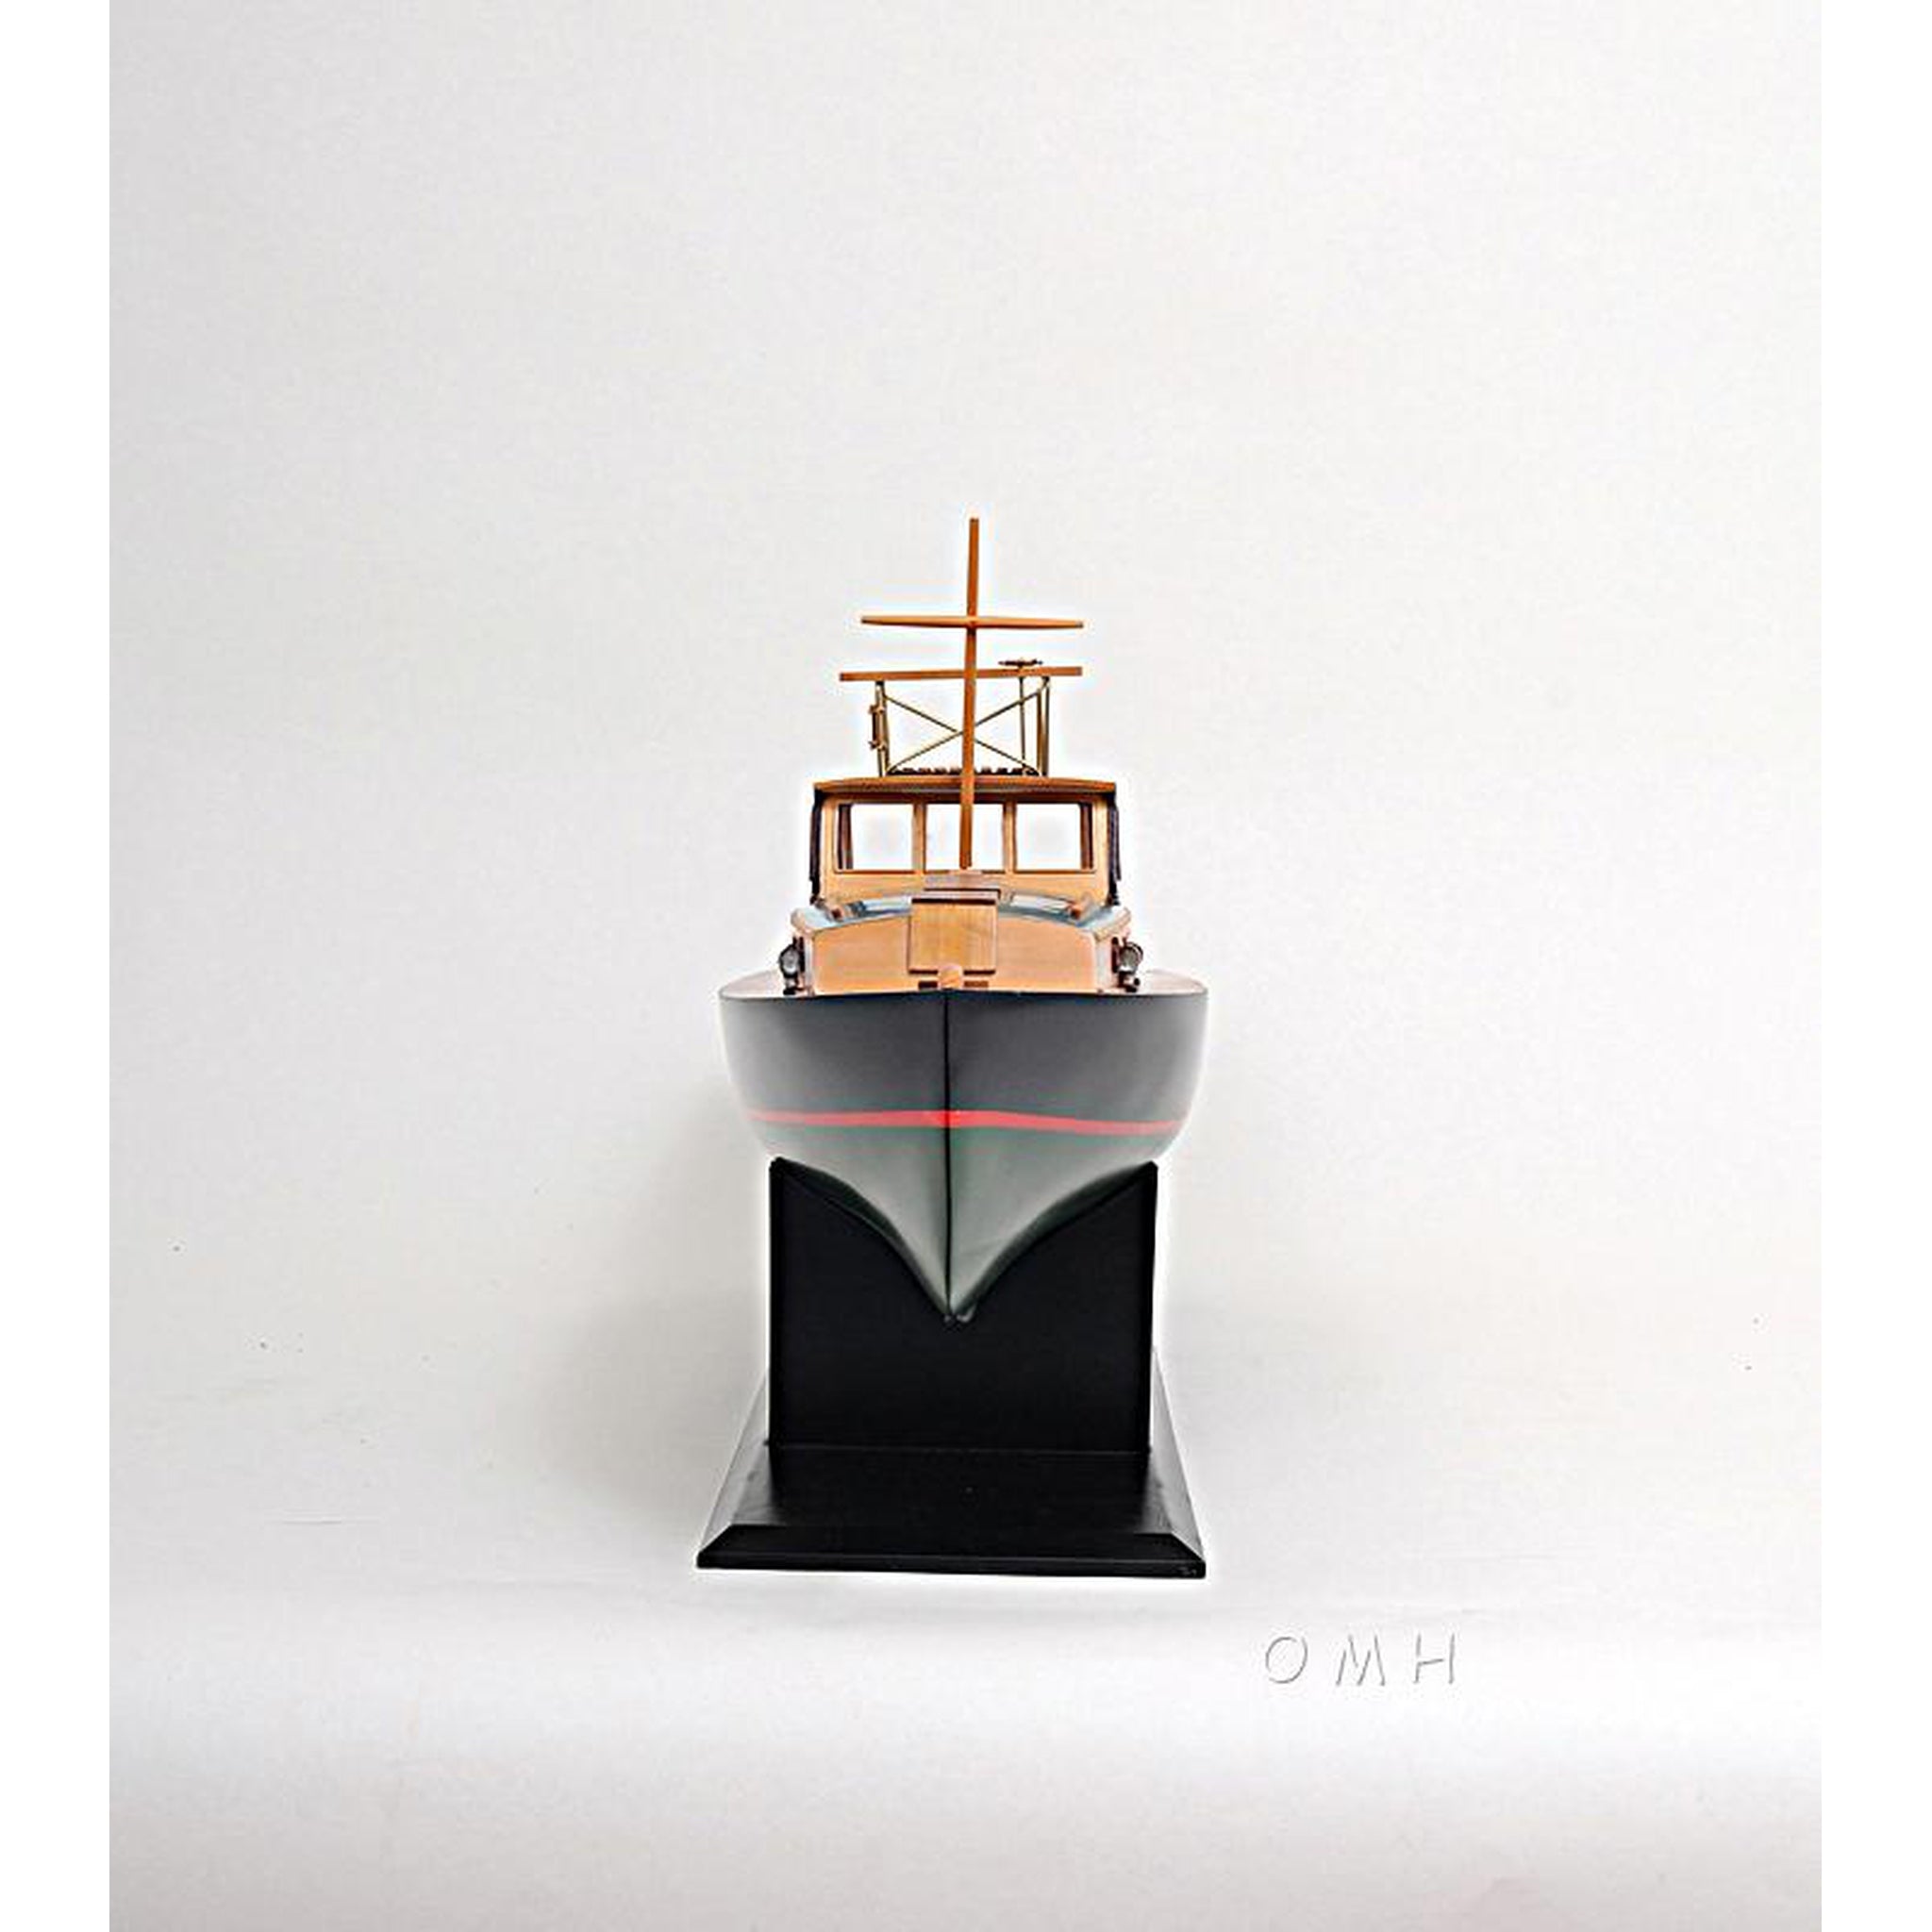 Fishing Boat Model